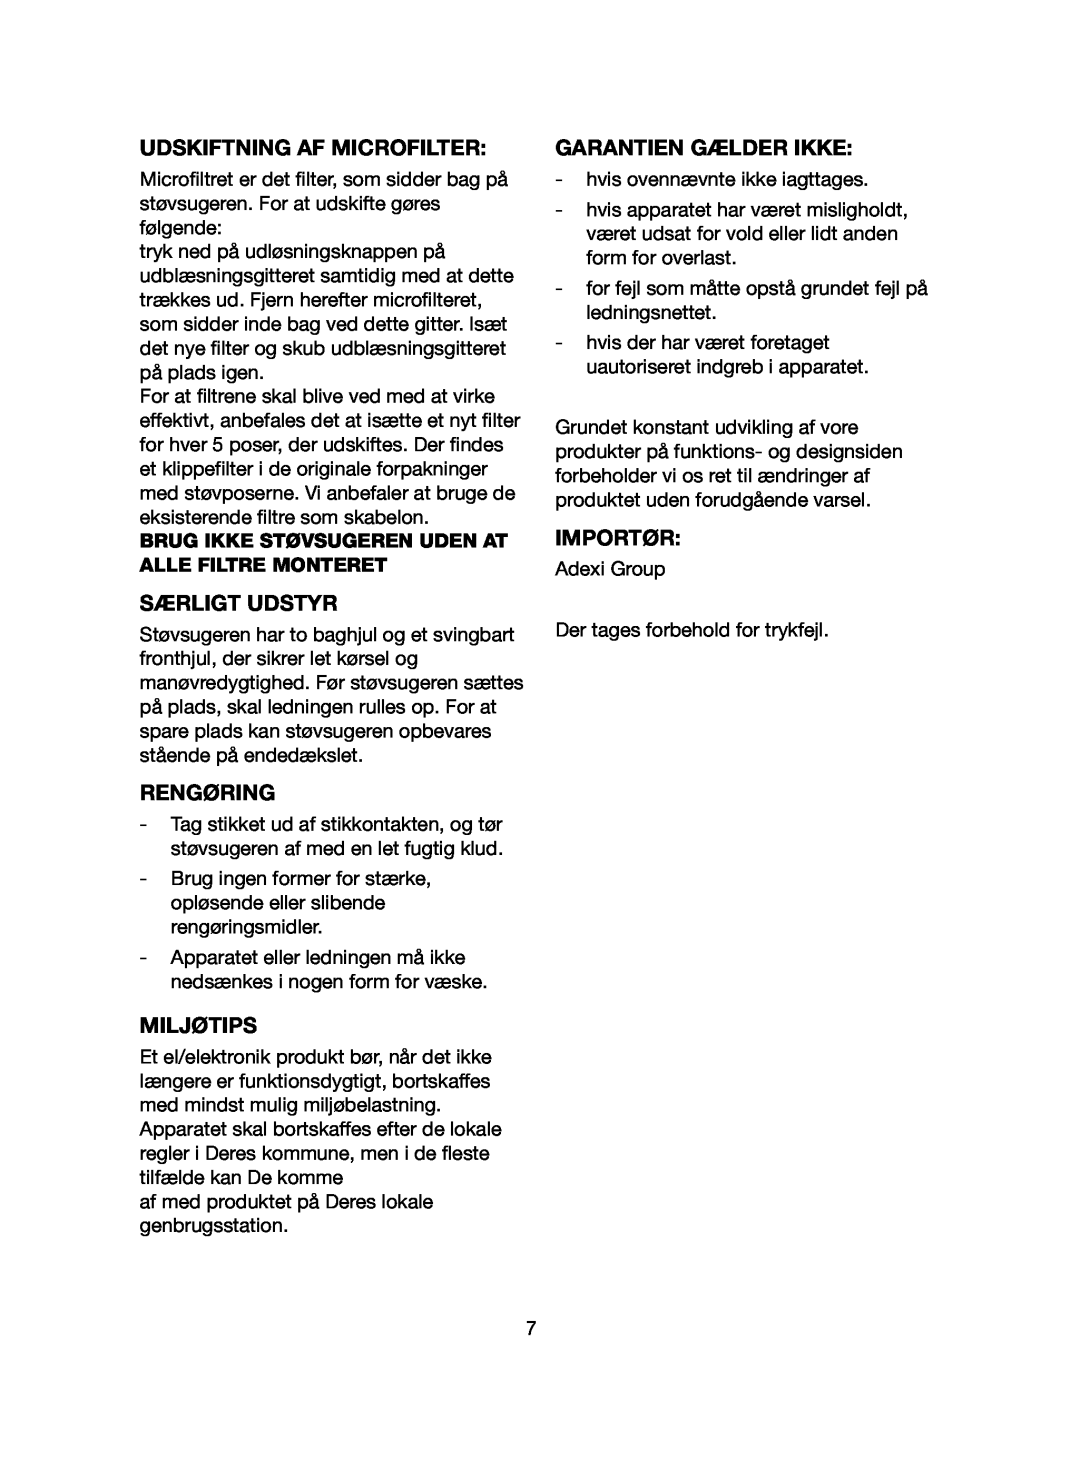 Melissa 640-107 manual Udskiftning Af Microfilter, Særligt Udstyr, Rengøring, Garantien Gælder Ikke, Miljøtips, Importør 